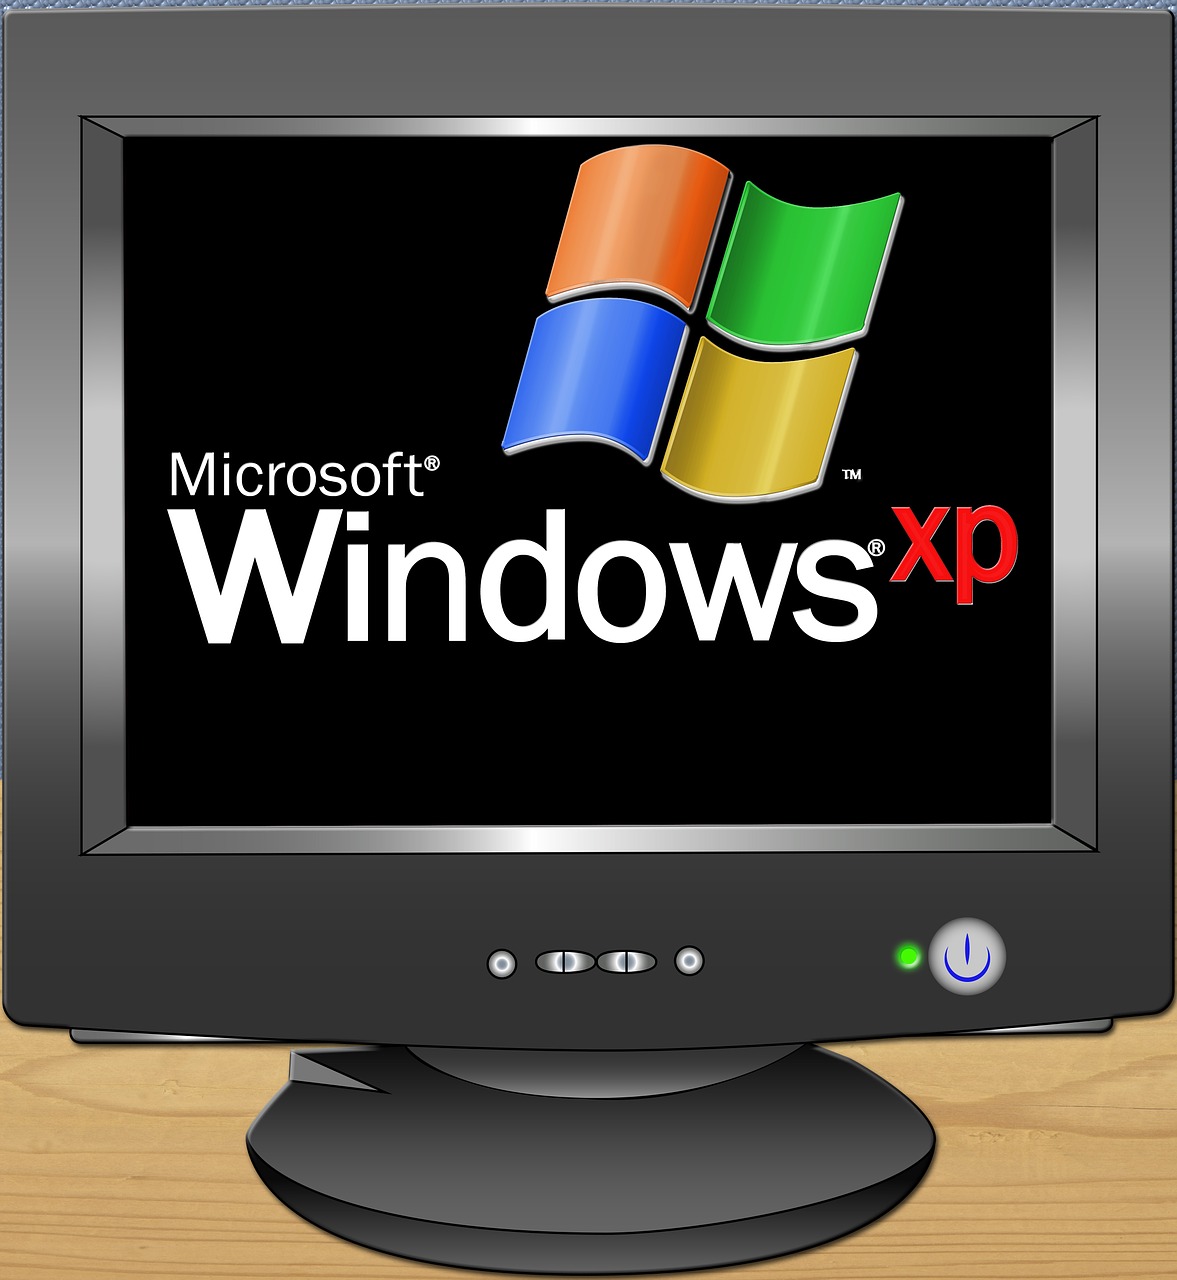 Windows XP OS